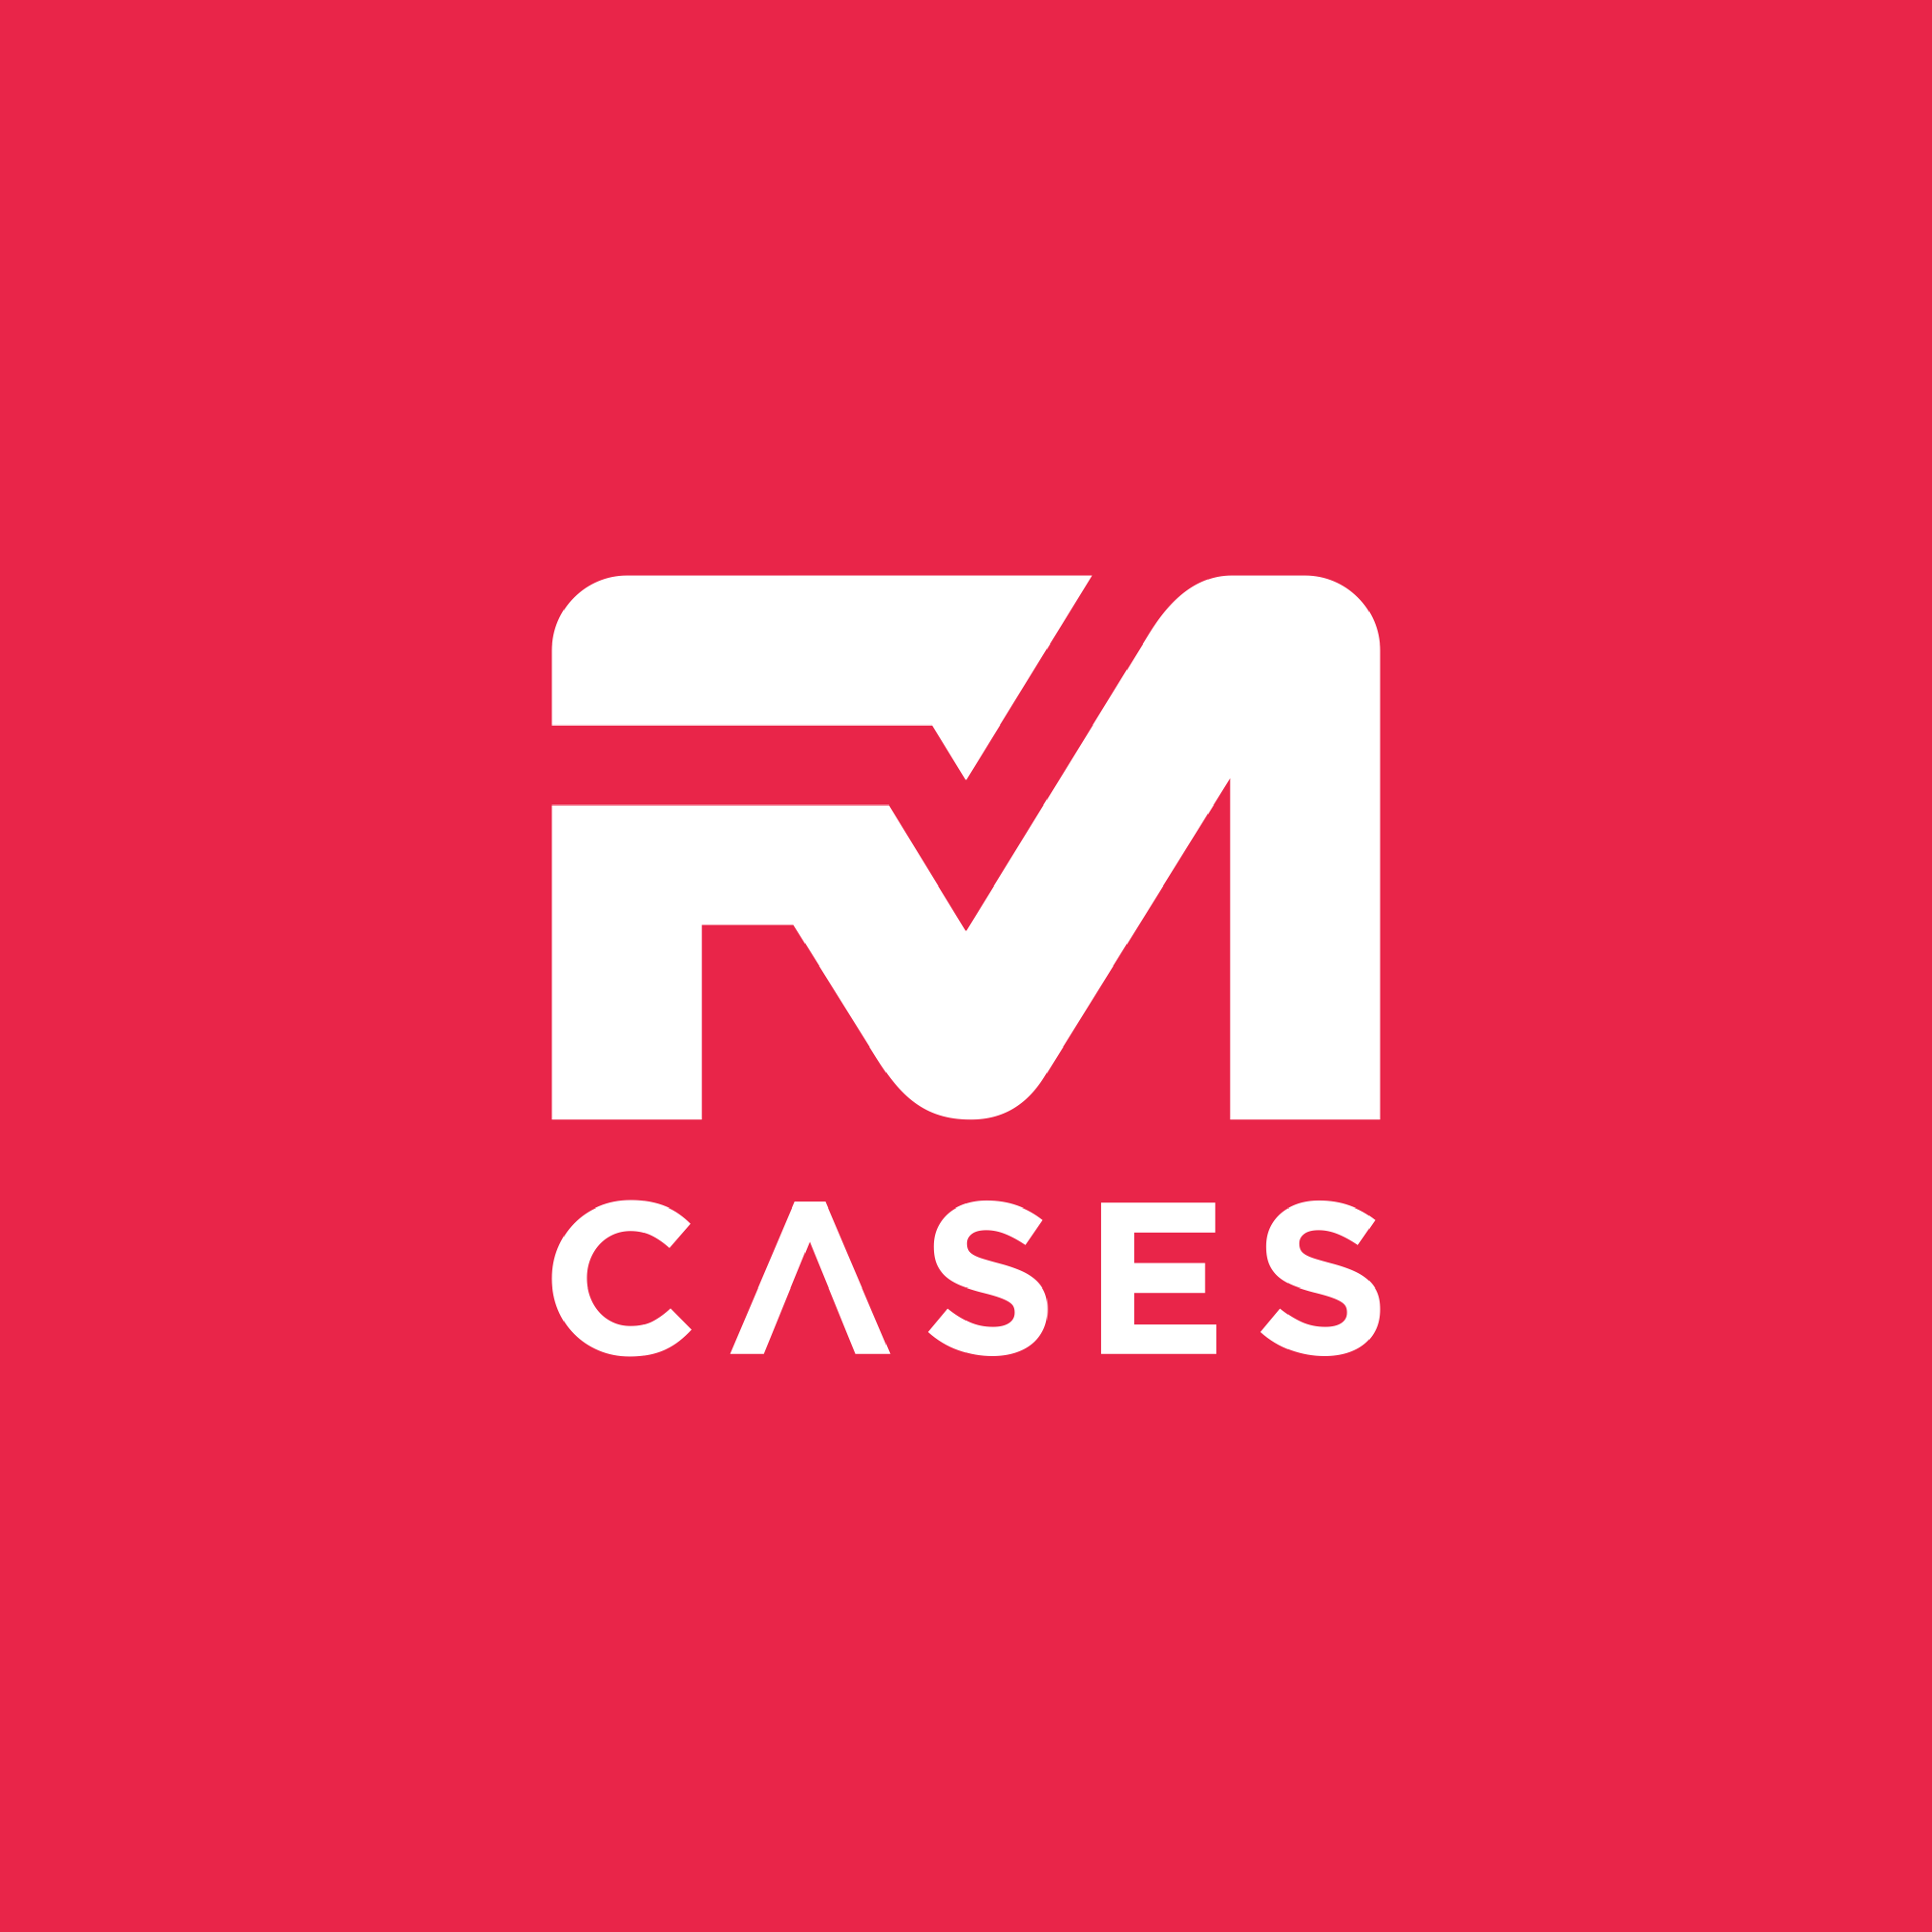 FM Cases